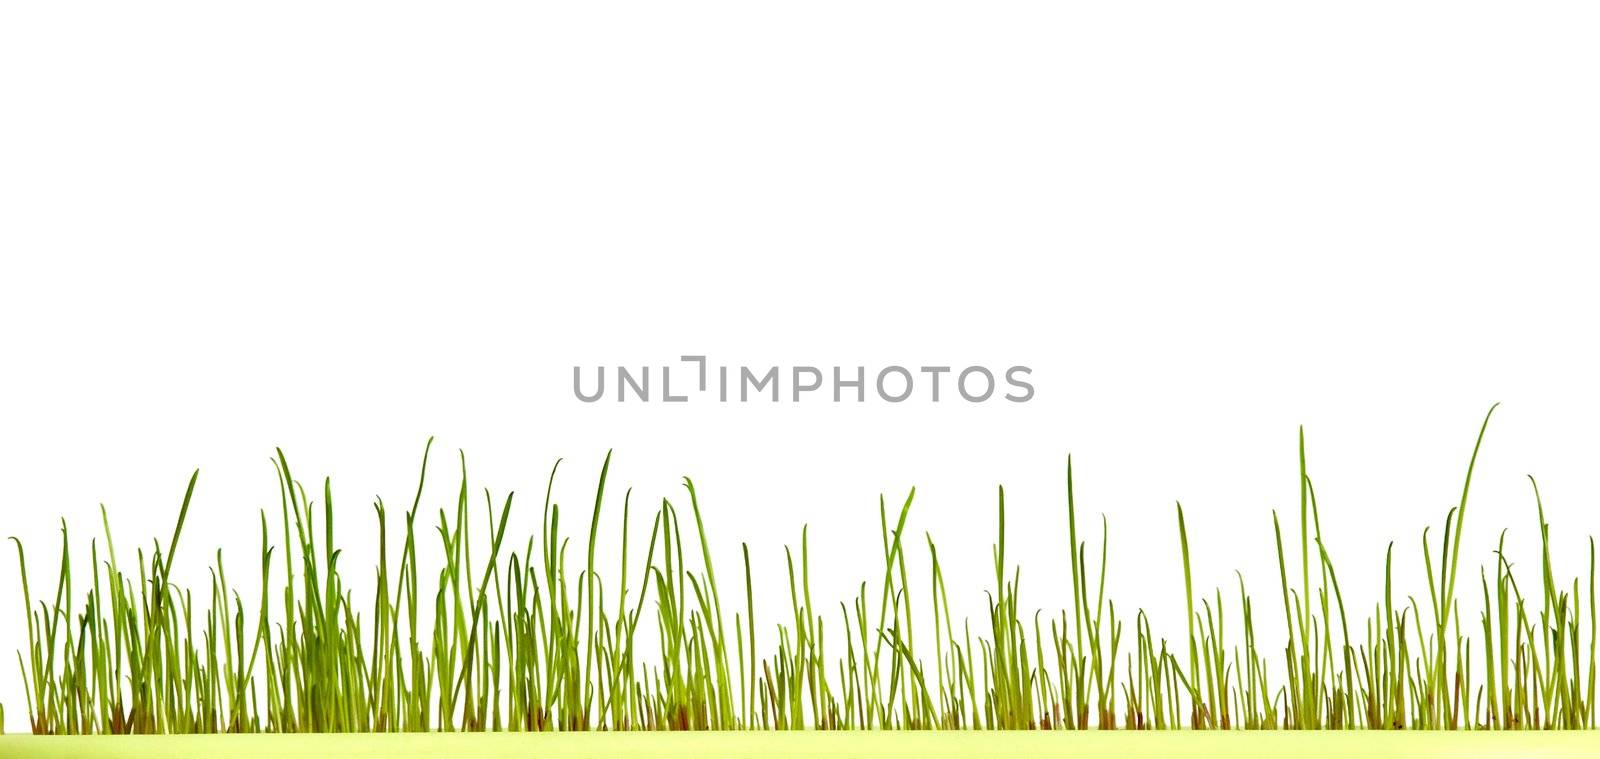 An image of fresh green grass